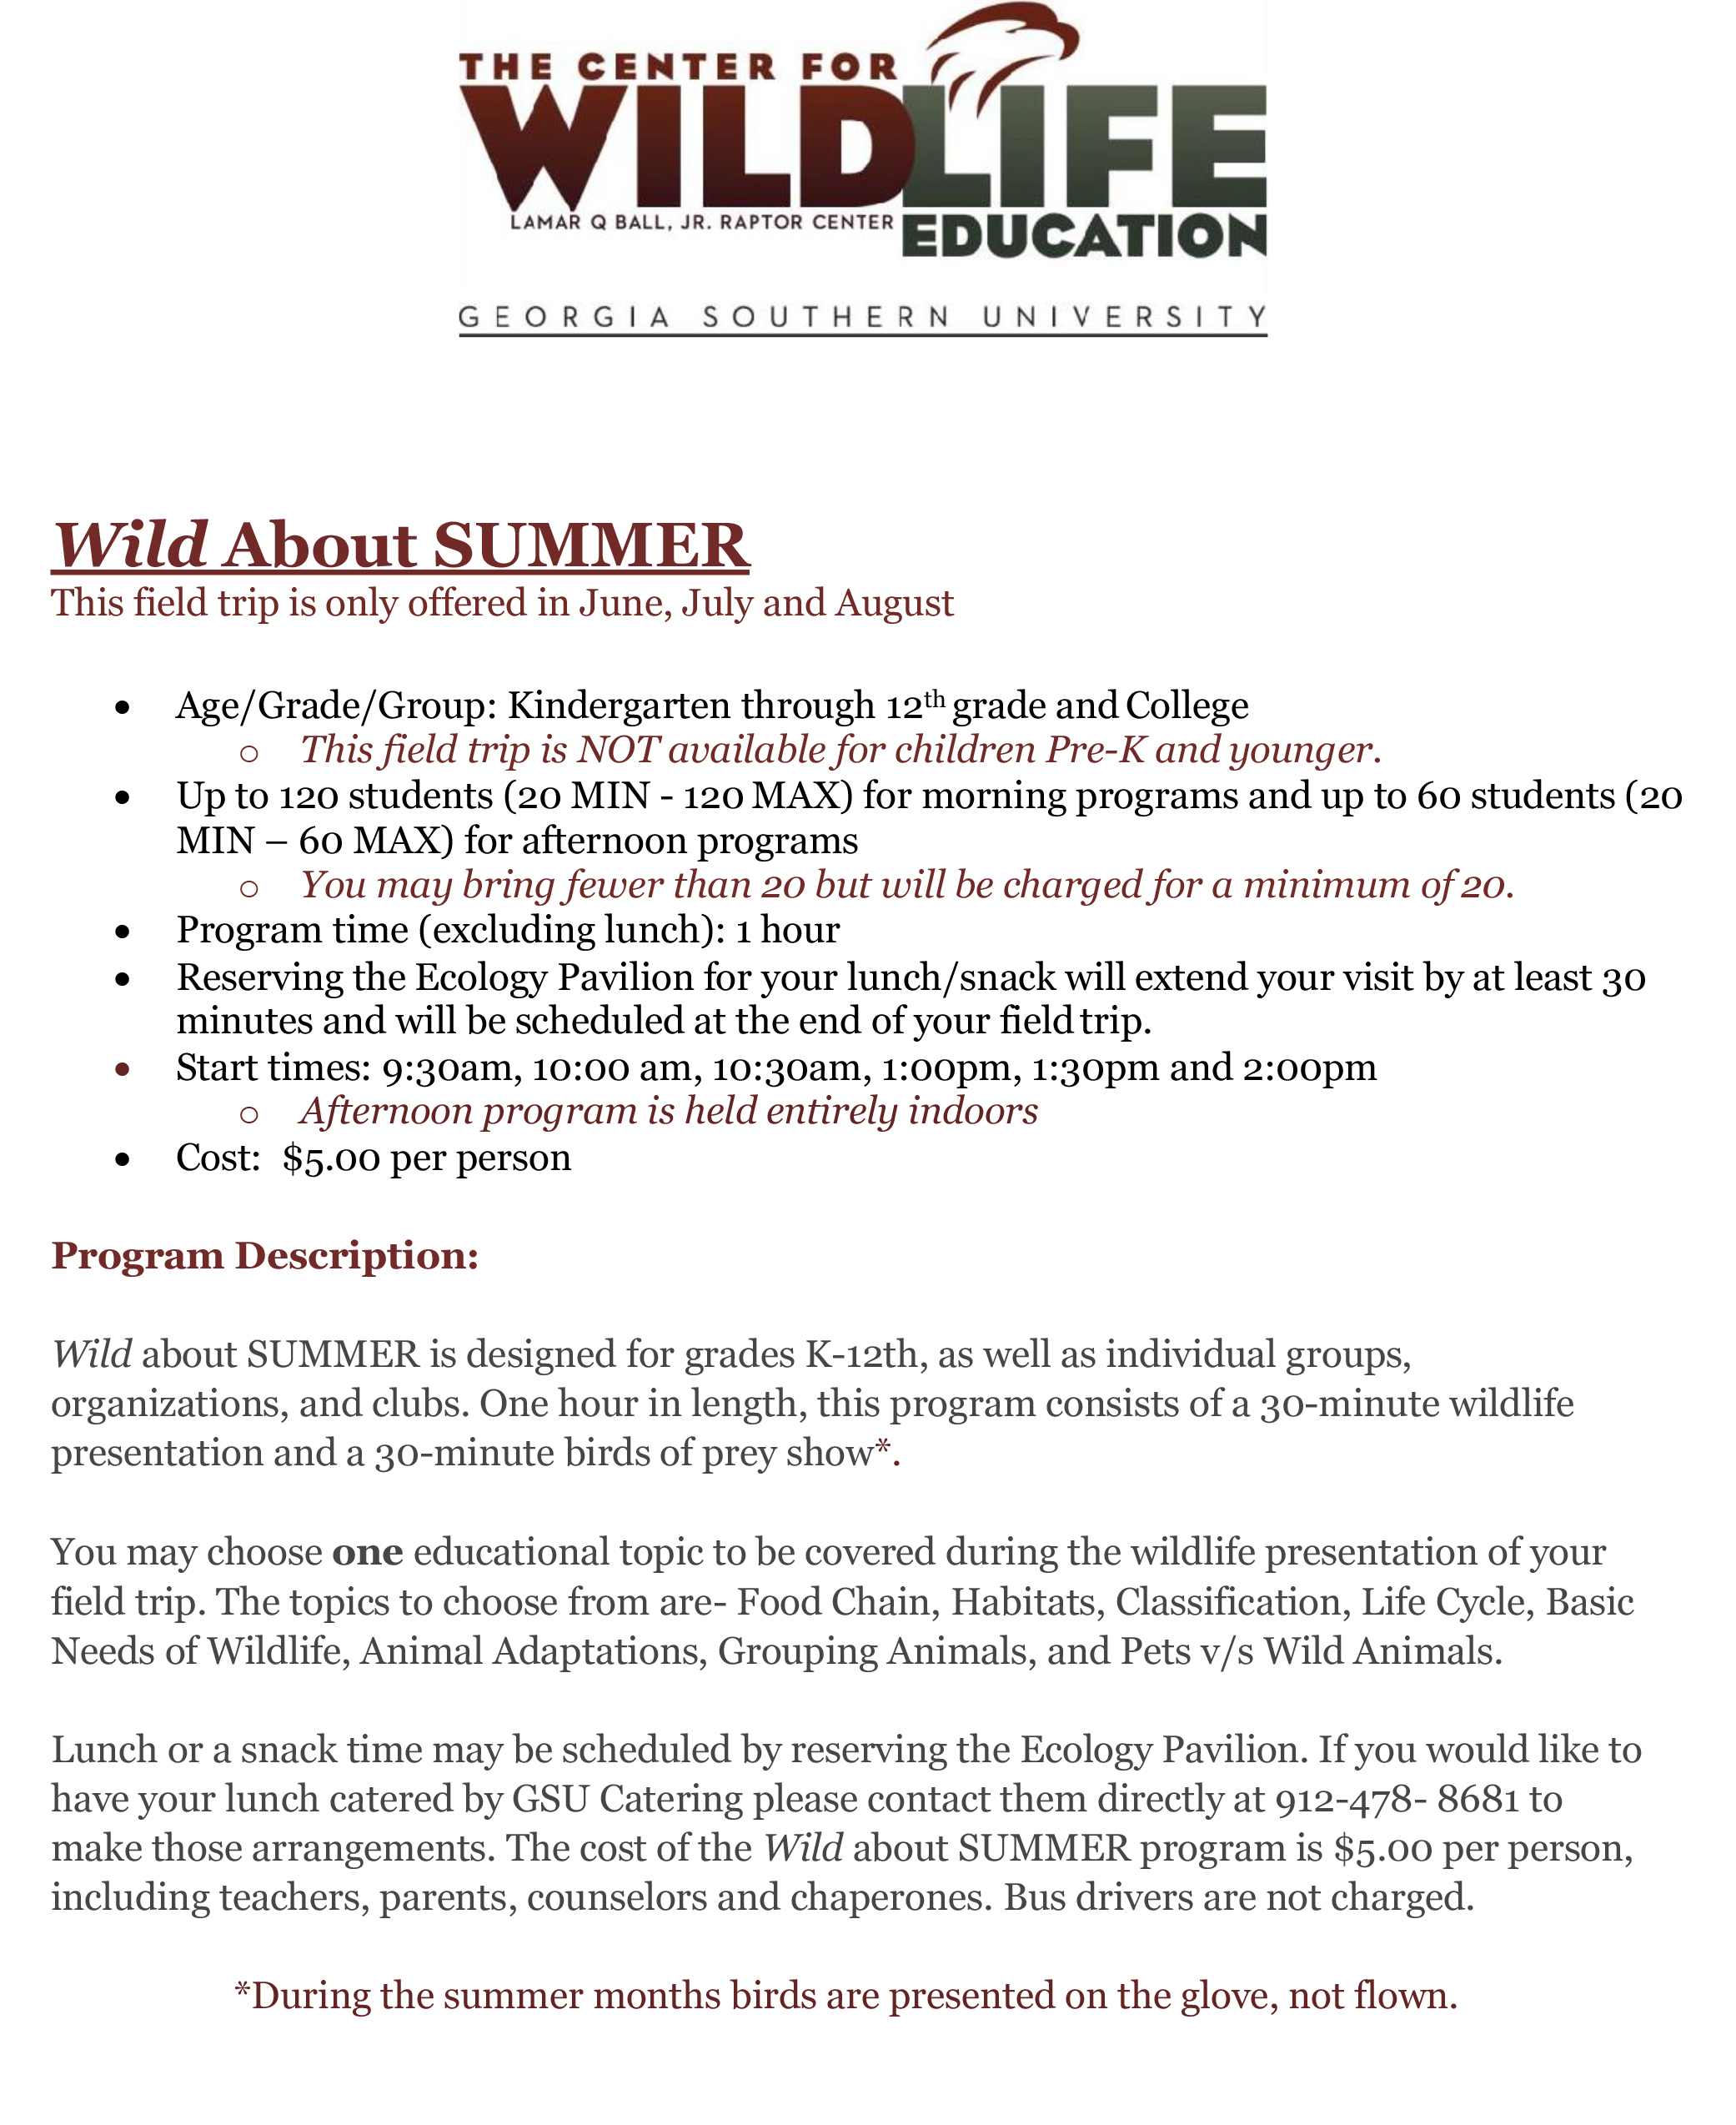 Wild-About-Summer gsu wildlife center summer program 2021